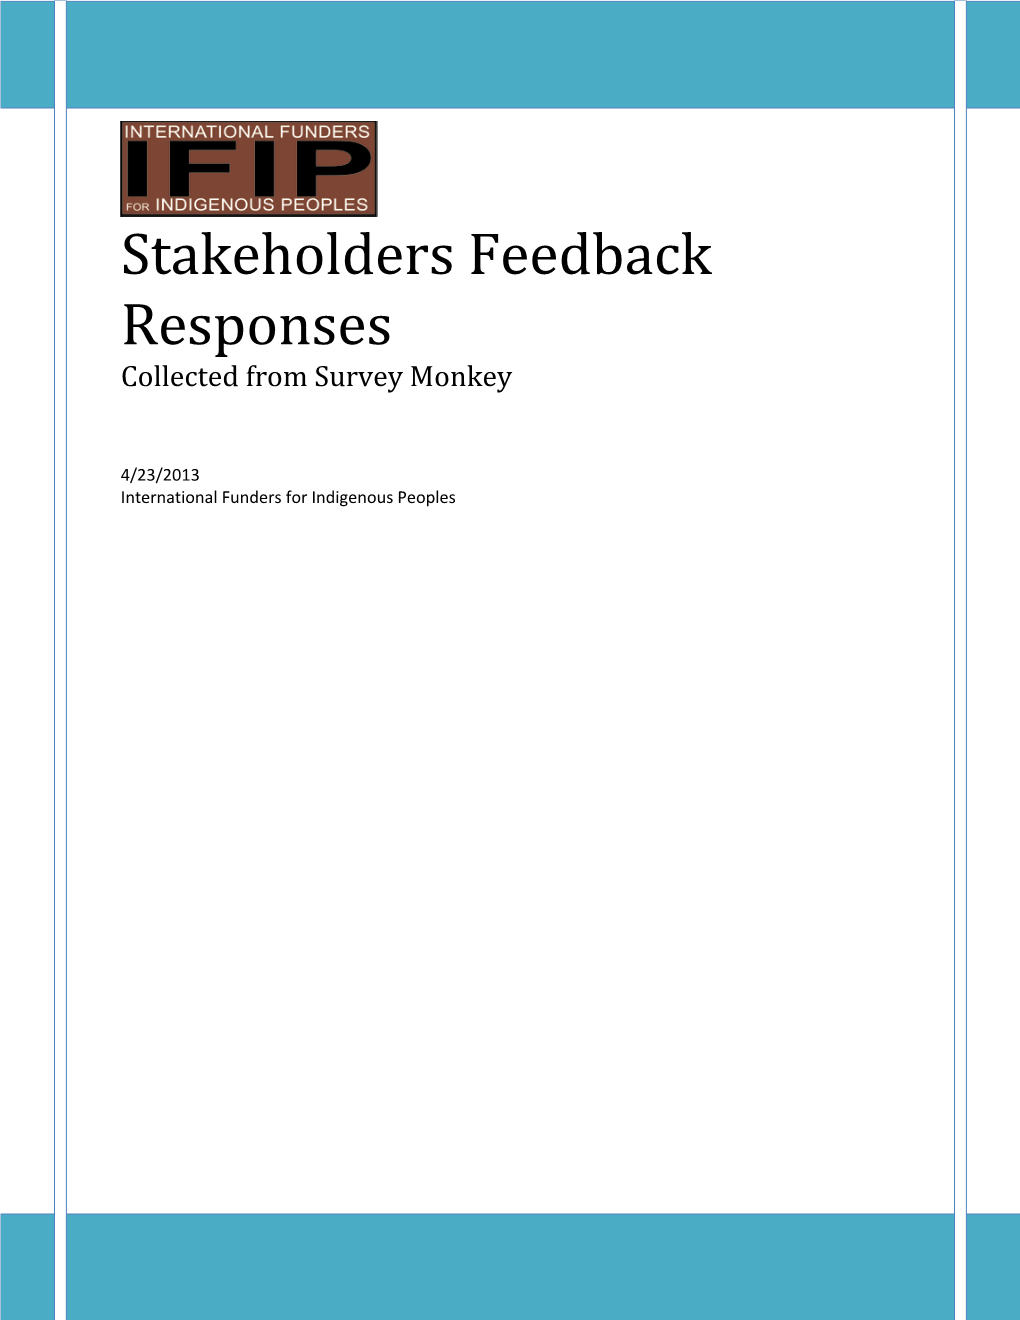 Stakeholders Feedback Responses